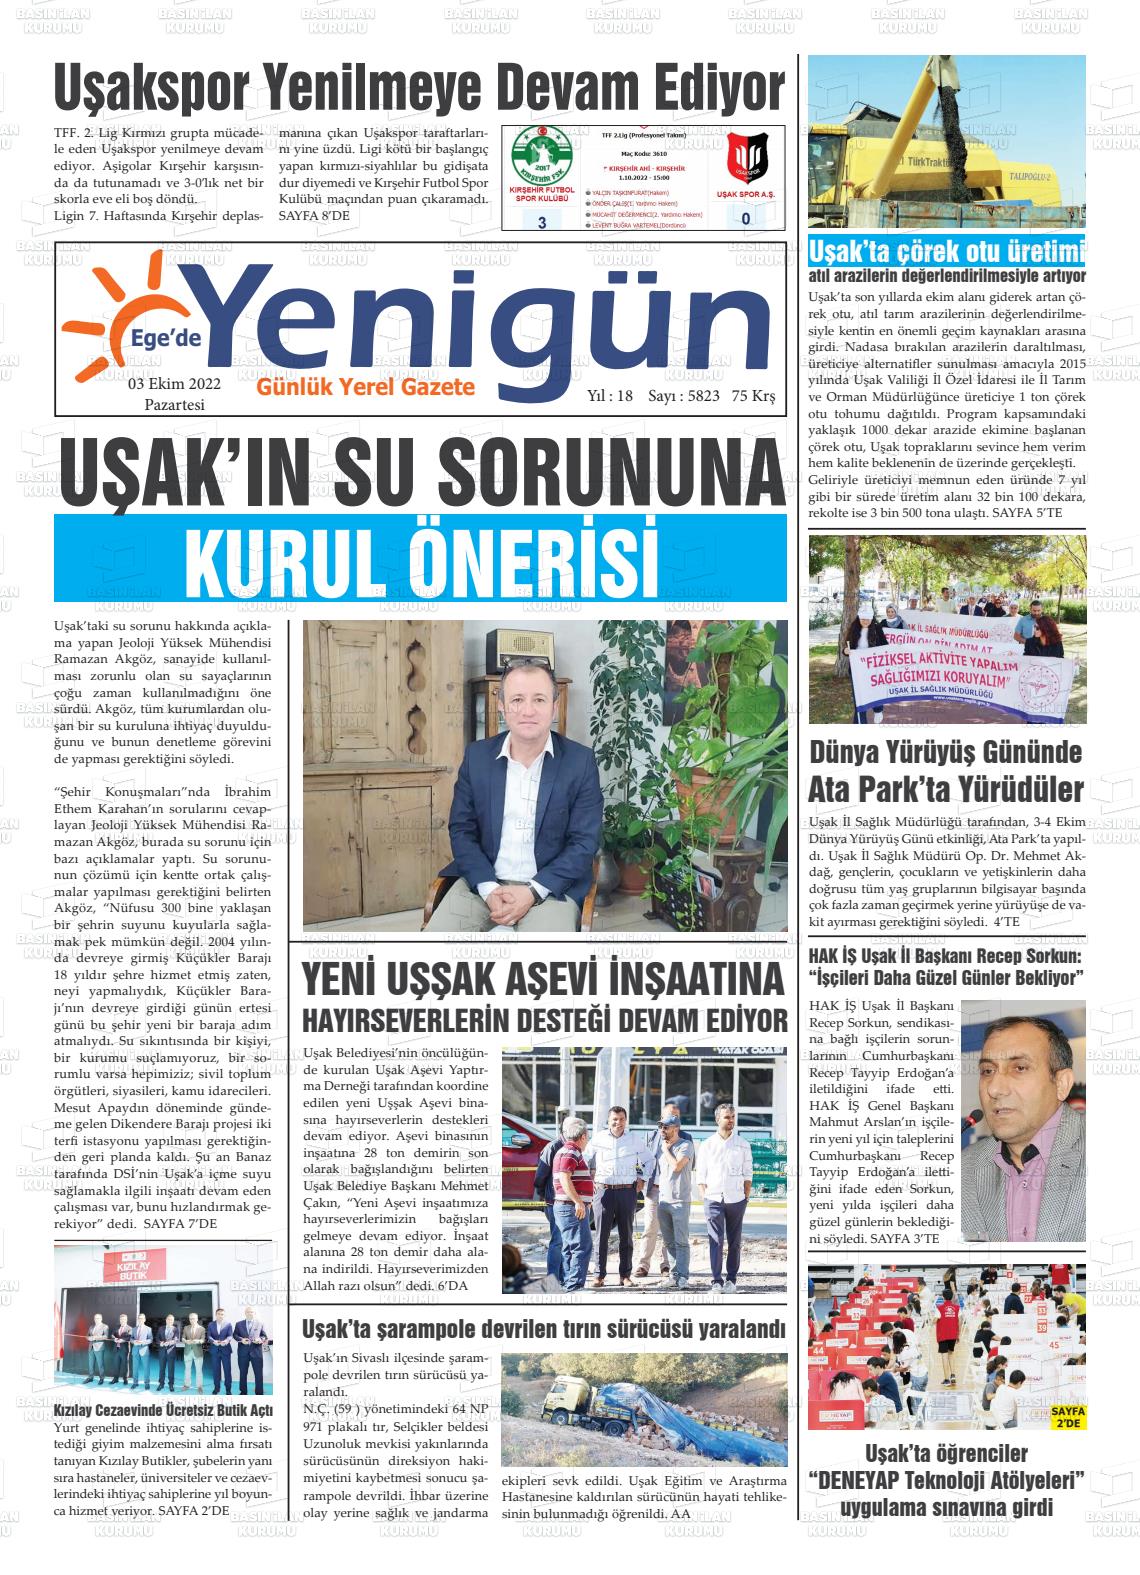 03 Ekim 2022 EGE'DE YENİGÜN GAZETESİ Gazete Manşeti